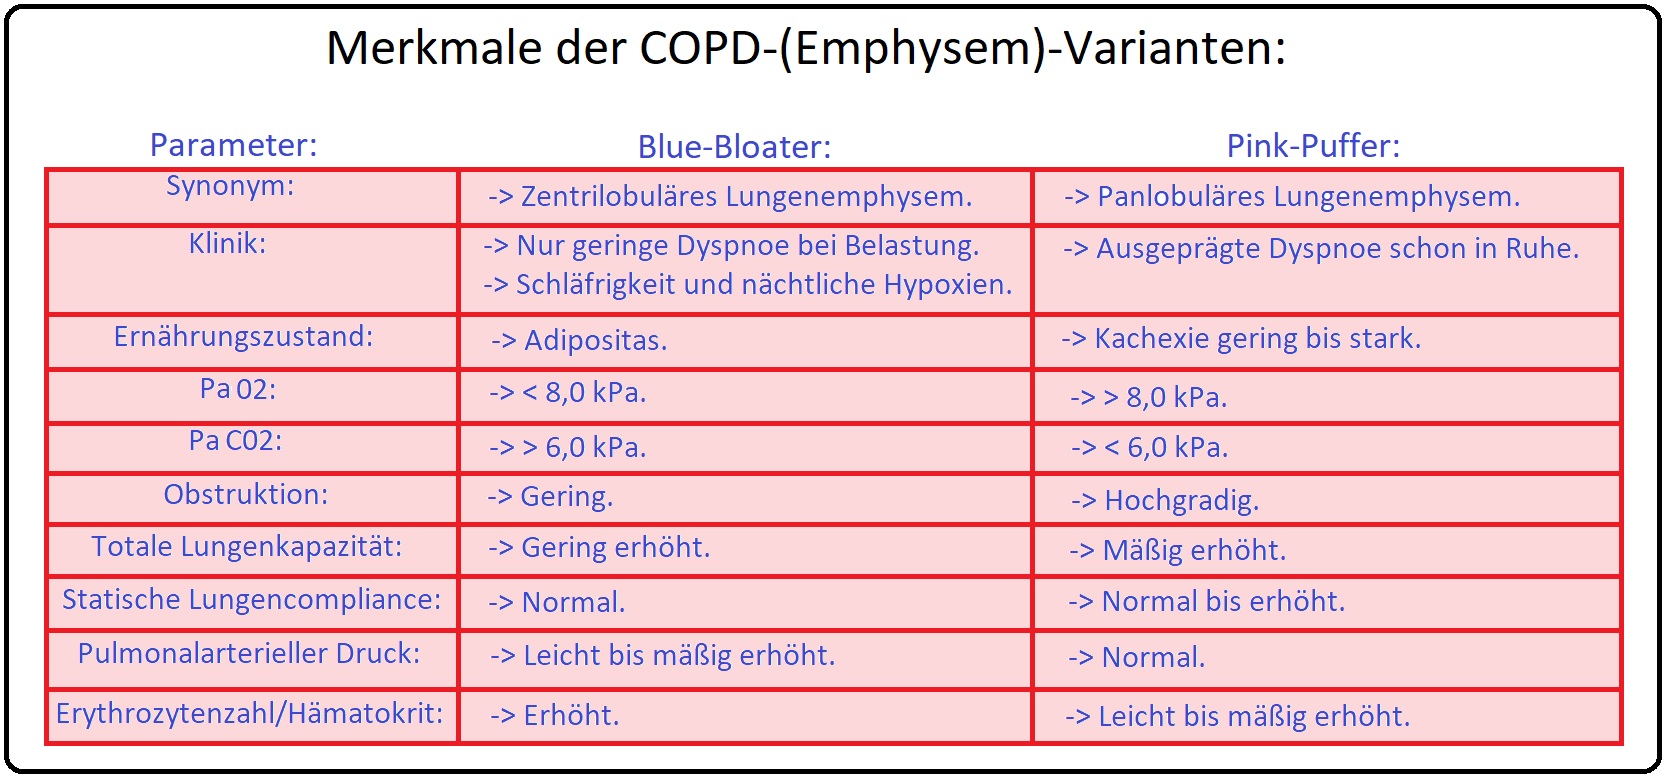 778 Merkmale der COPD (Emphysem) Varianten